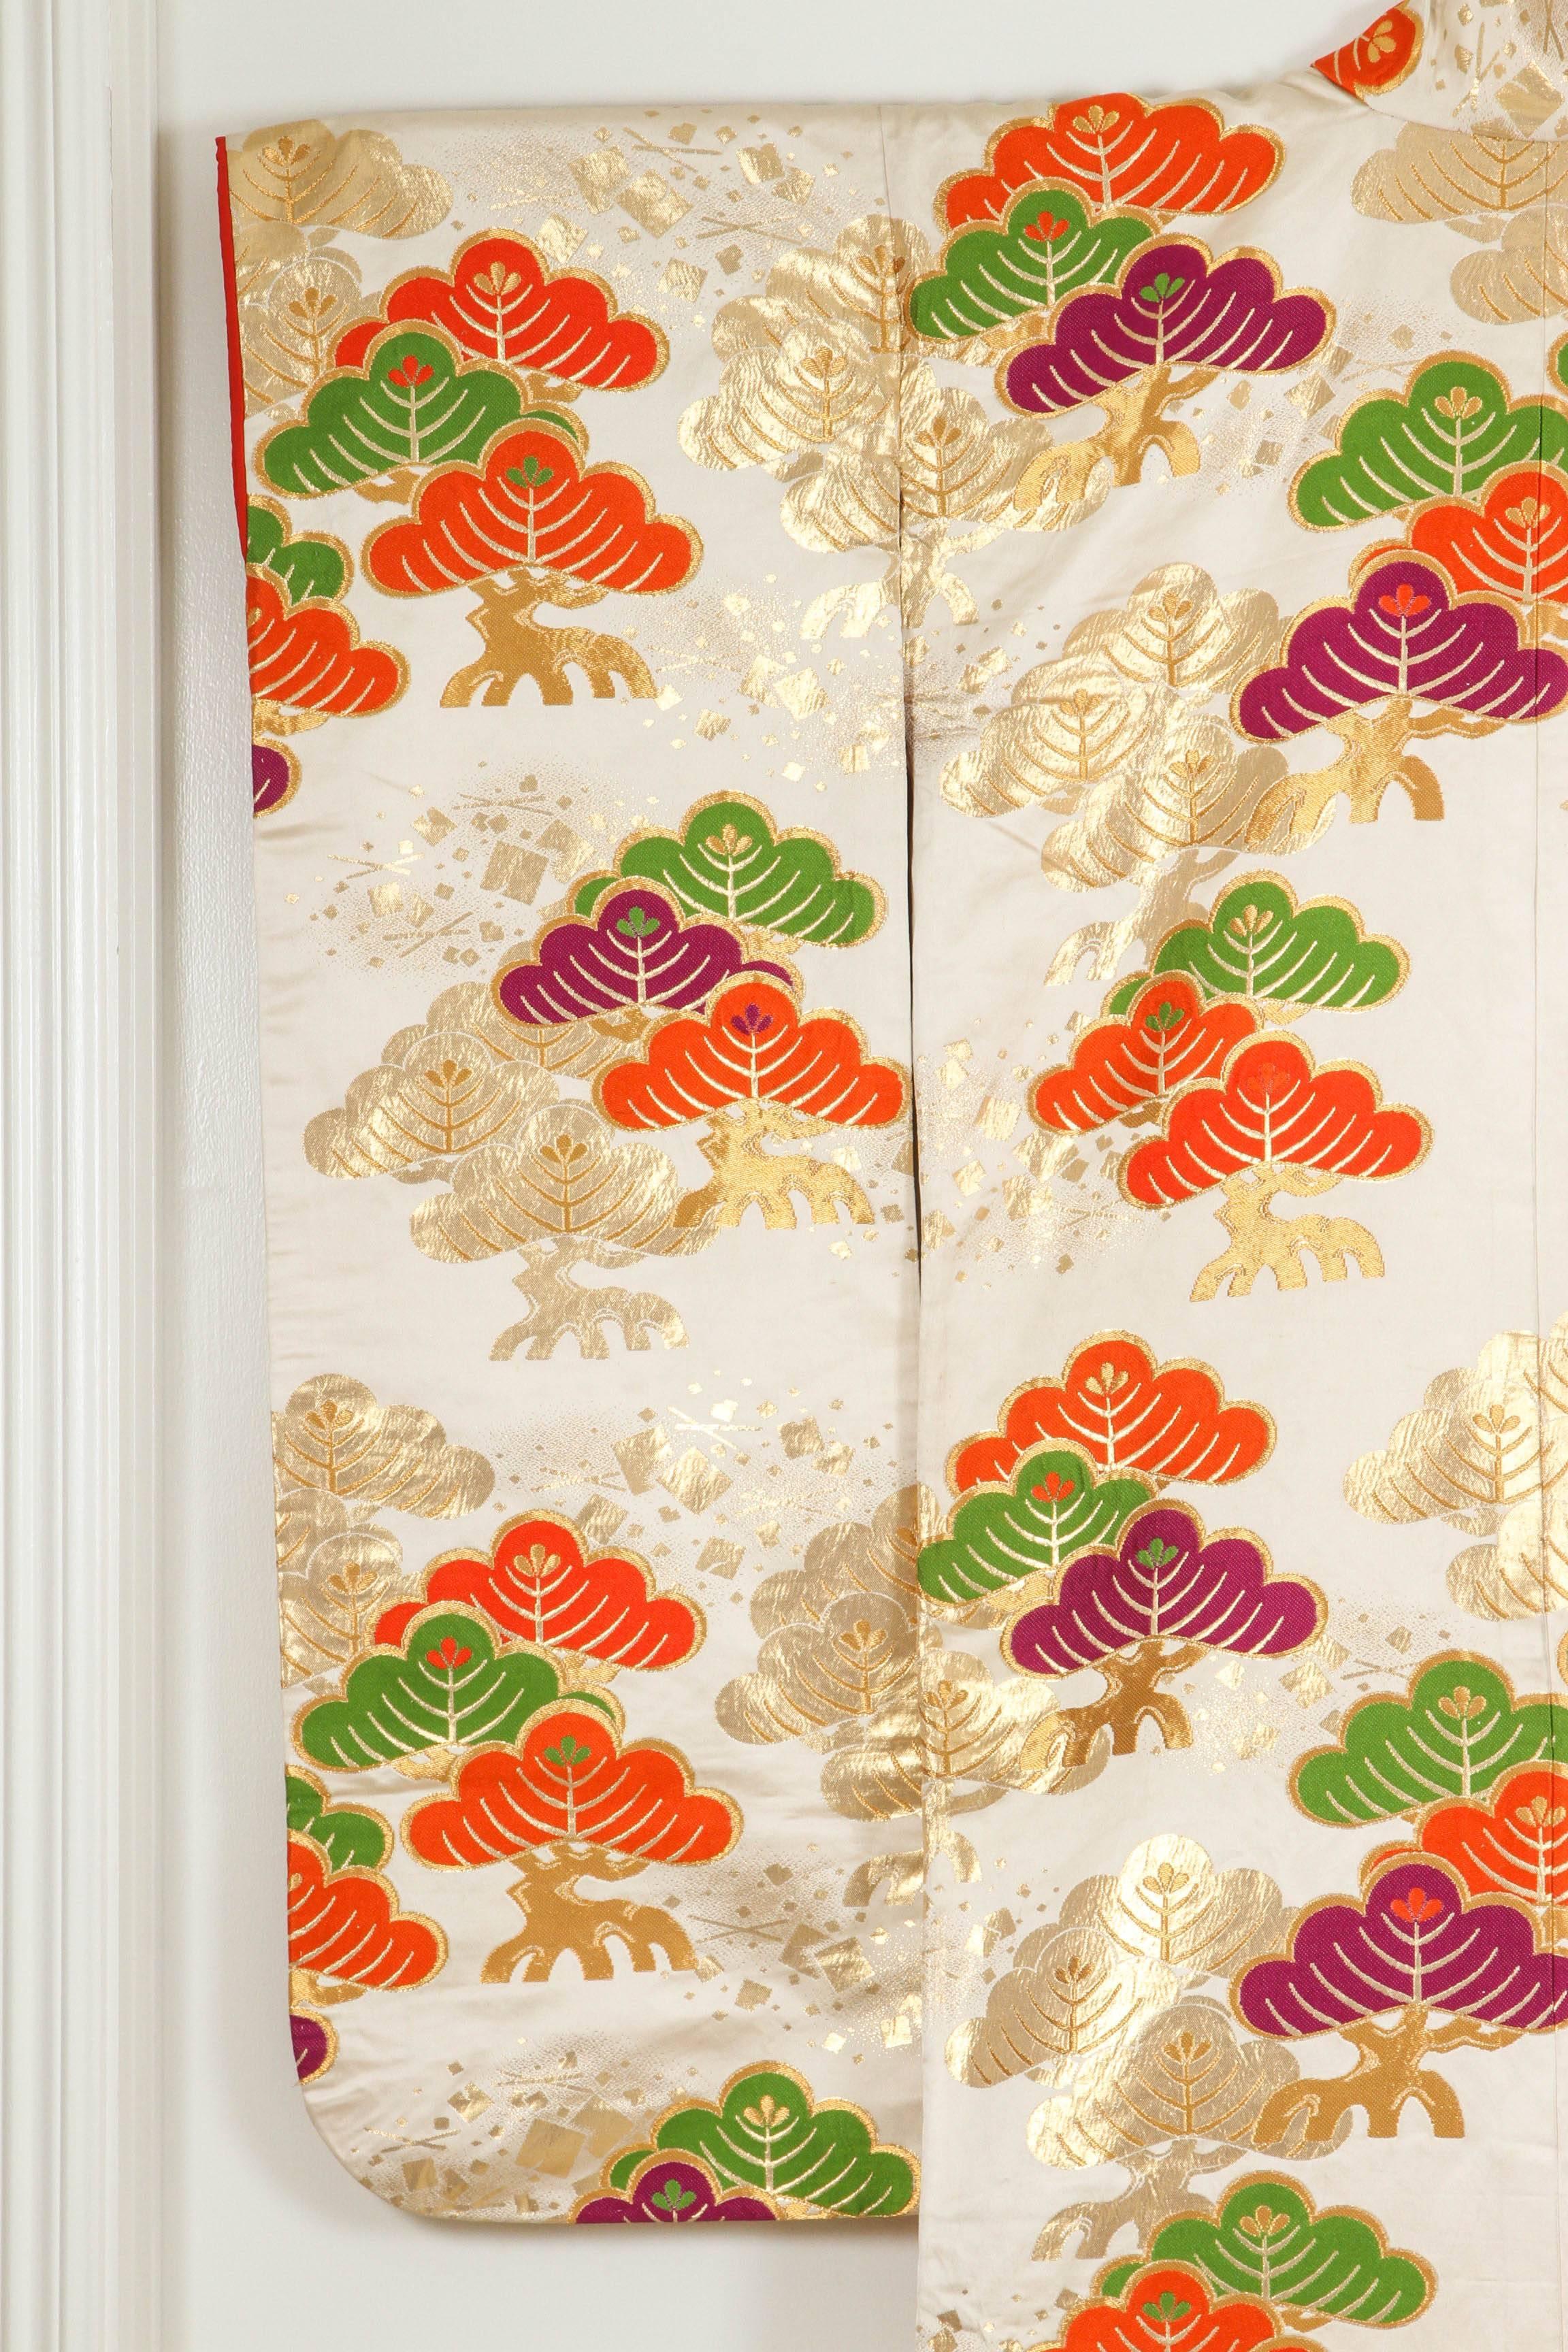 Un kimono de cérémonie japonais vintage du milieu du siècle, en brocart de soie couleur ivoire, à collectionner. Exemplaire unique.
Fabuleux kimono de cérémonie de qualité muséale en pure soie avec broderie à la main détaillée et complexe, accentuée